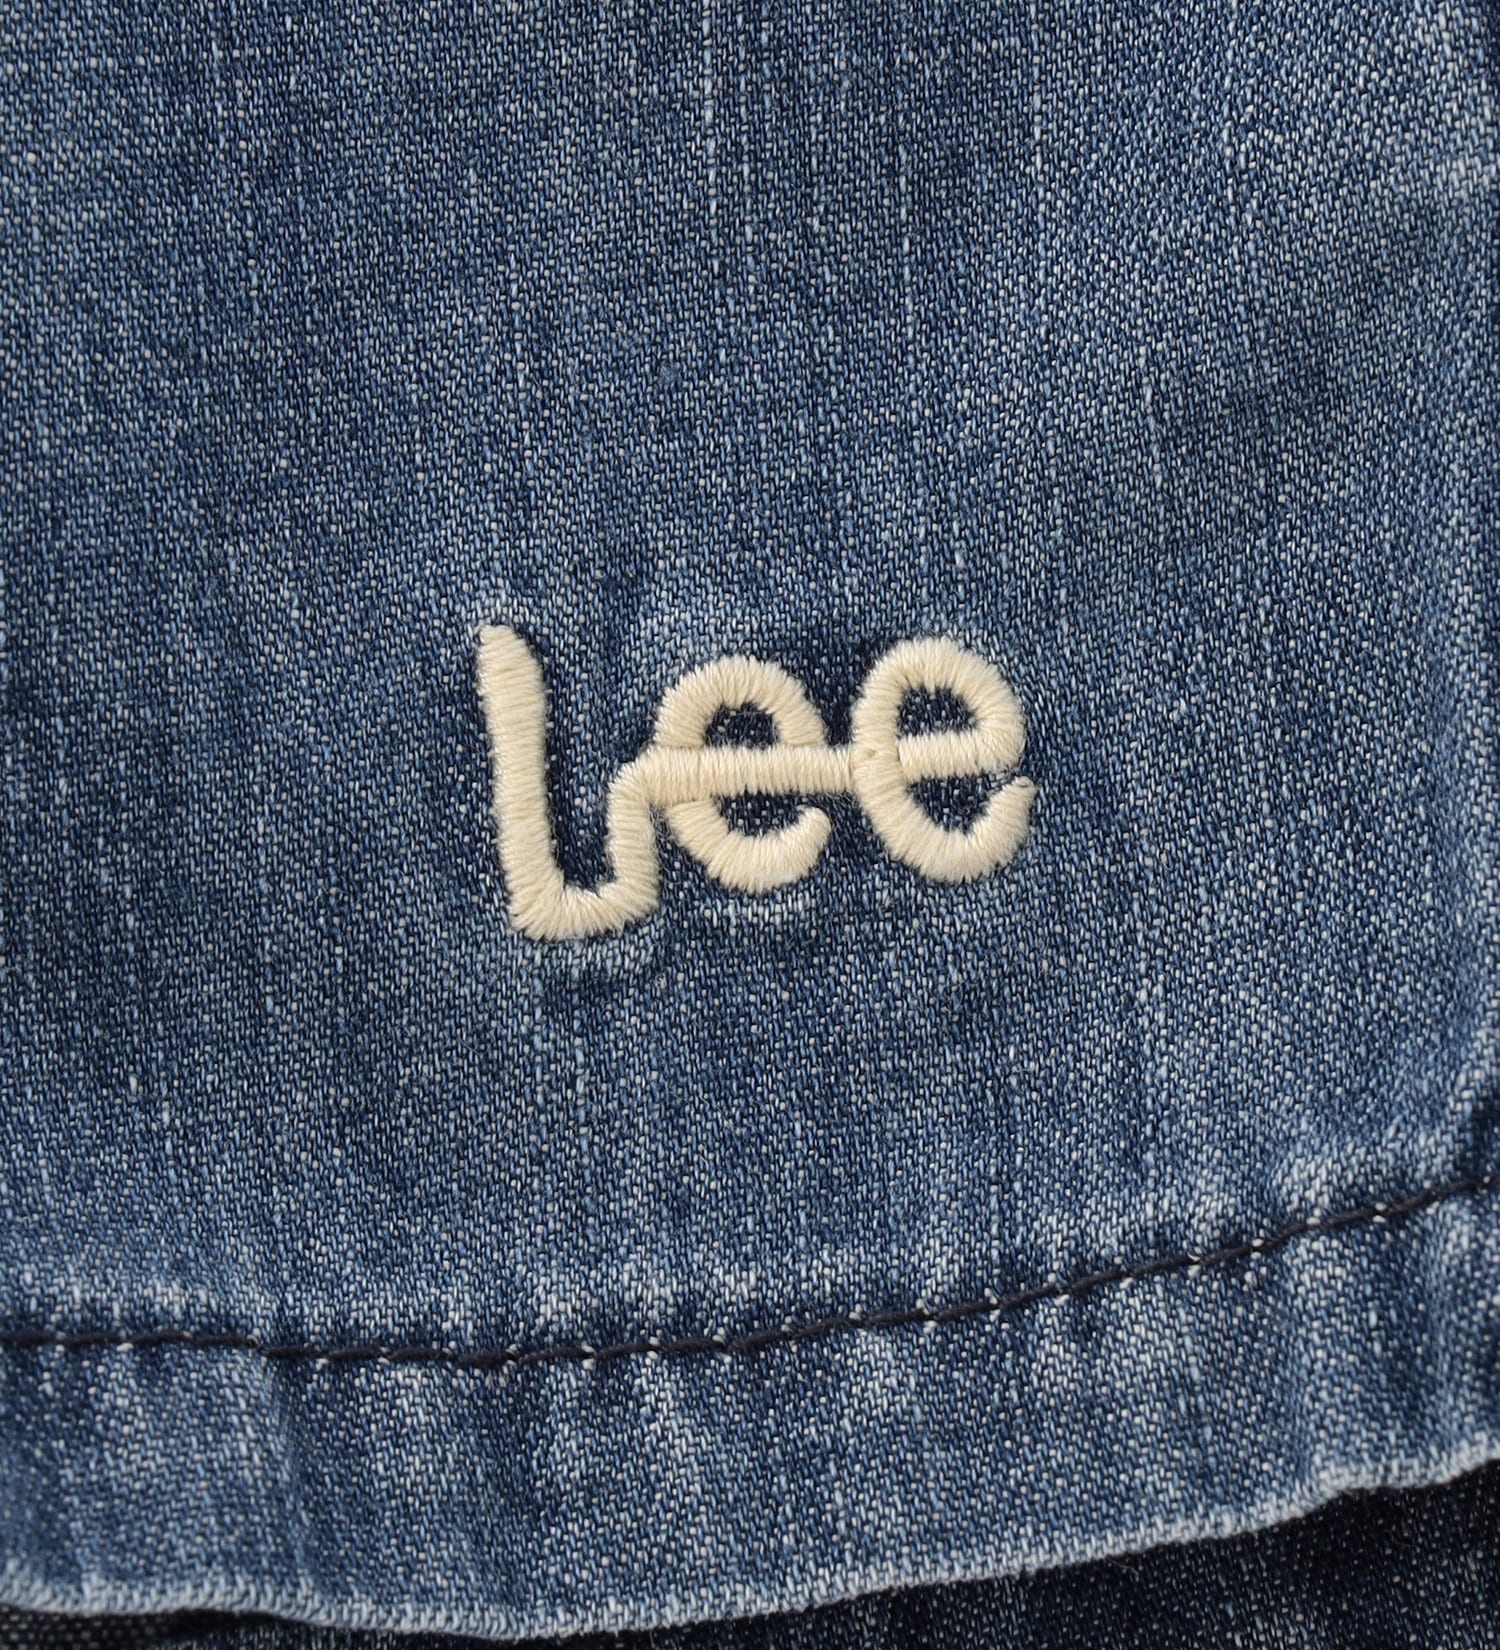 Lee(リー)の【80/90cm】ベビー アスレチックショーツ|パンツ/パンツ/キッズ|中色ブルー